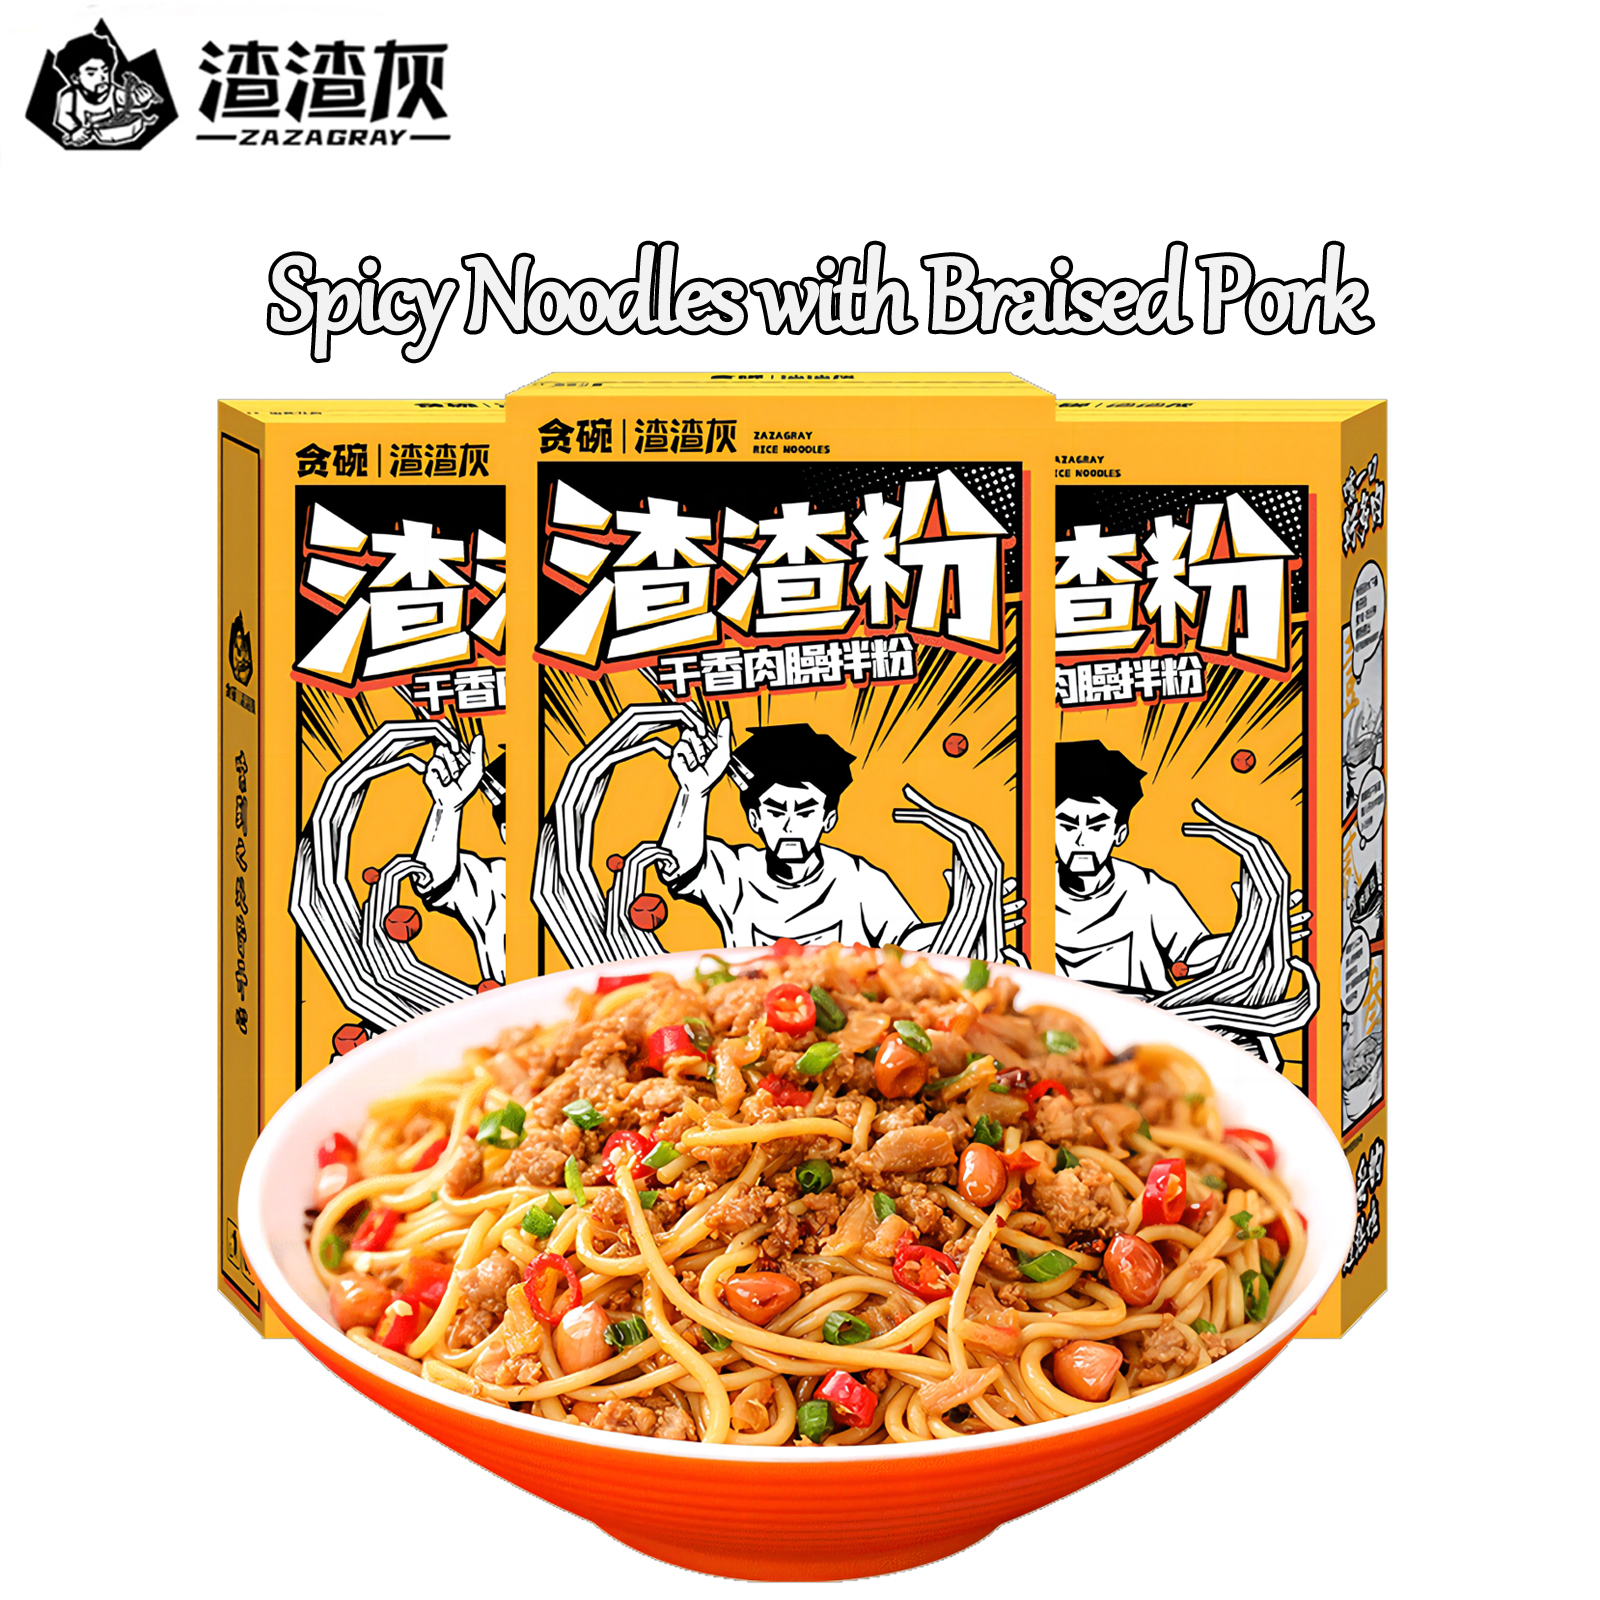 Spicy Rice Noodles neBraised Pork